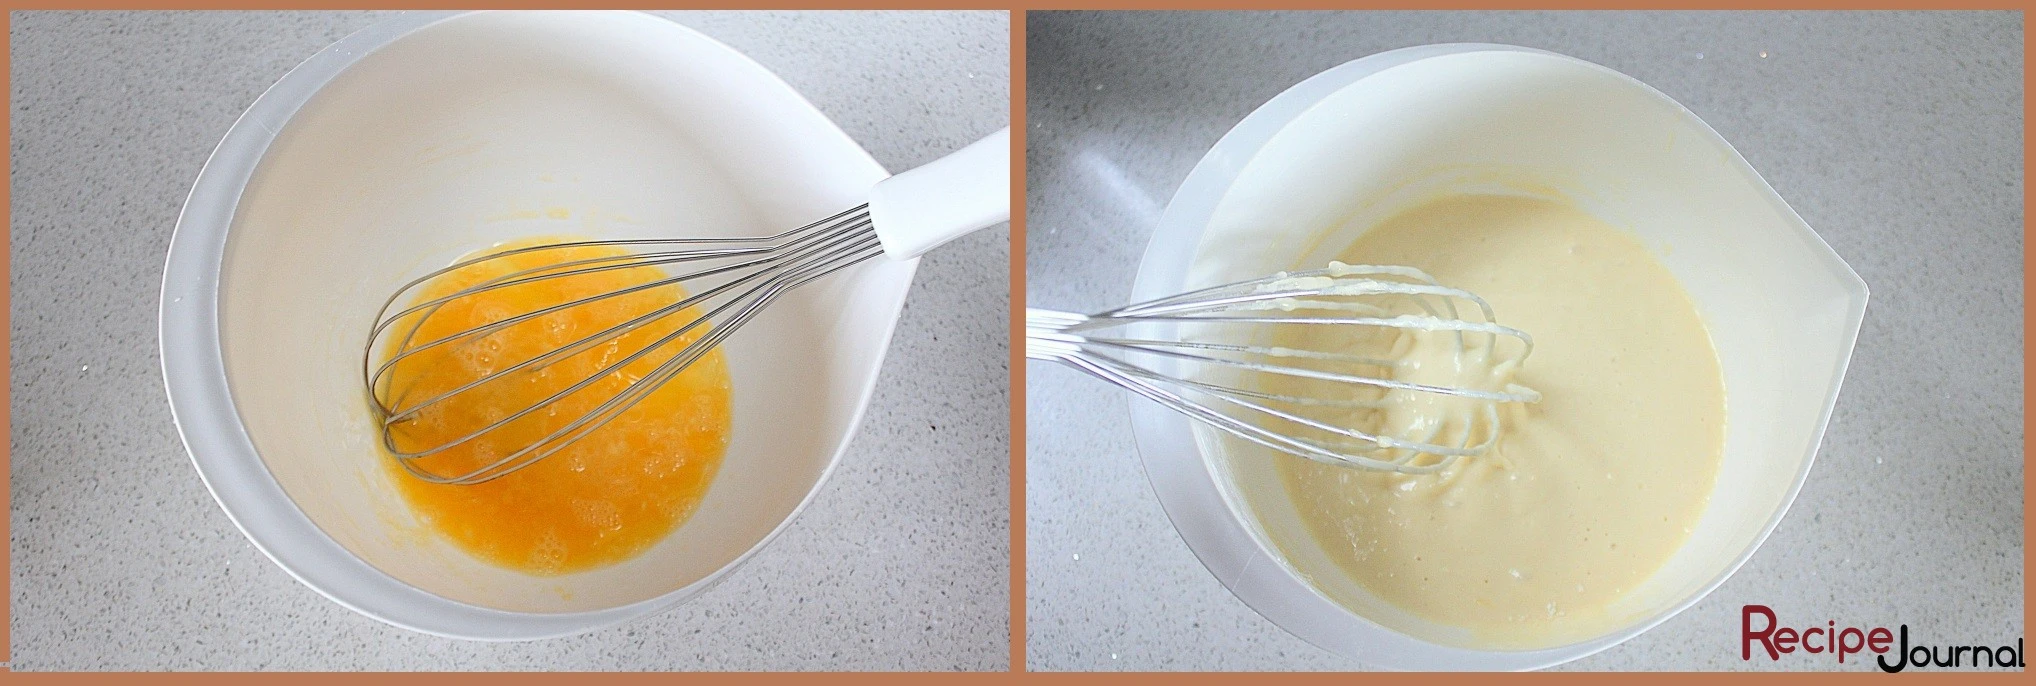 Яйца взбиваем, добавляем кефир, в него соду, перемешиваем, добавляем соль и сахар. Снова хорошо перемешиваем, добавляем просеянную муку, замешиваем тесто, густотой, как сметана.